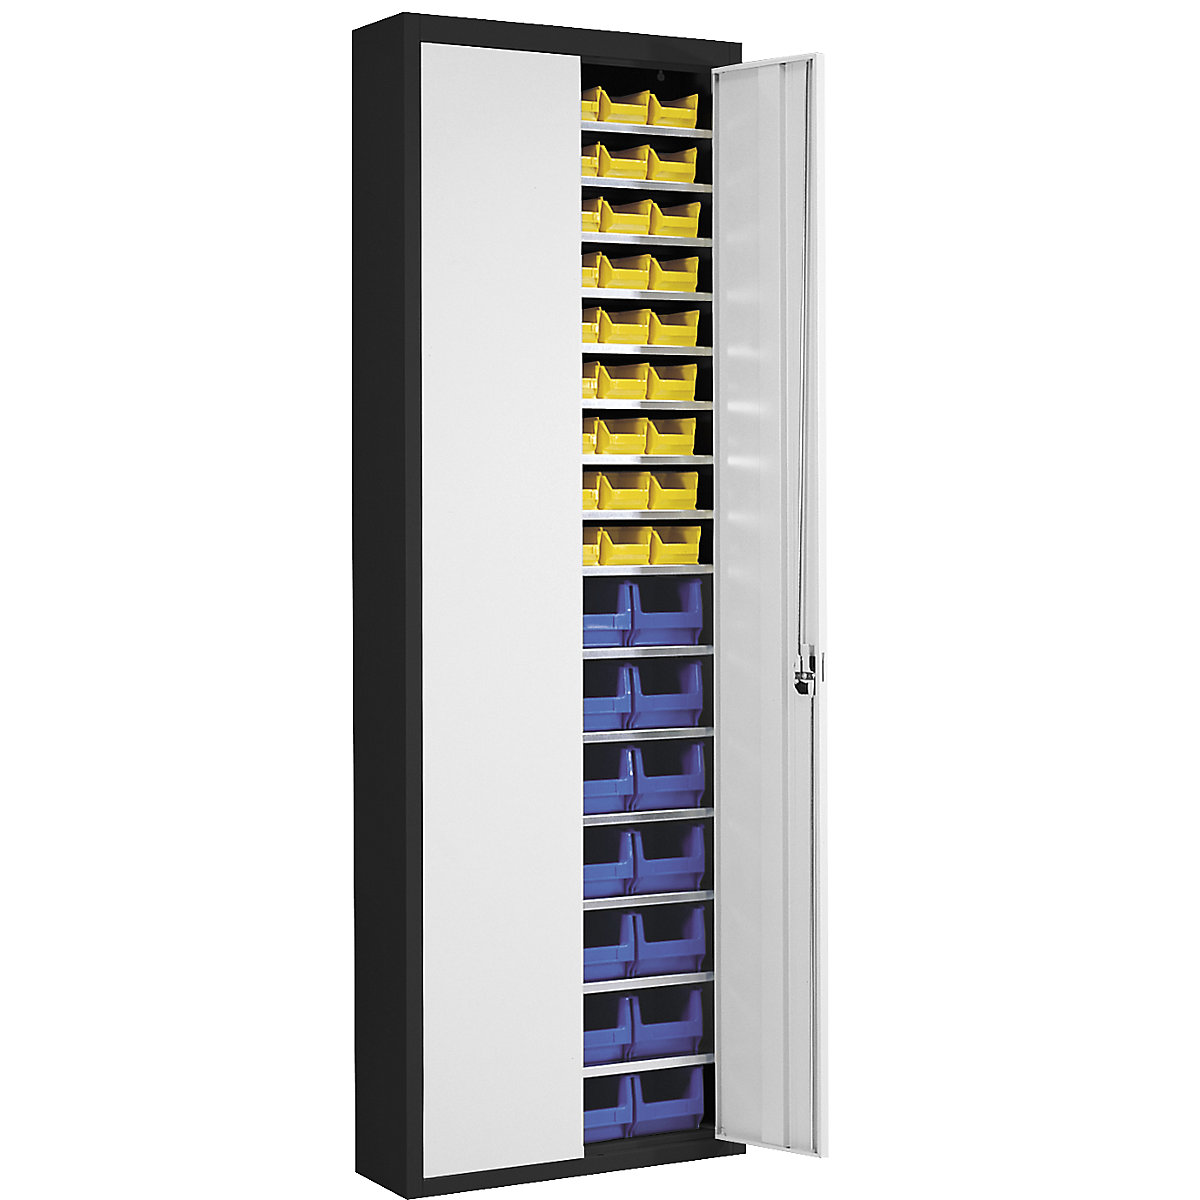 Skladišni ormar s otvorenim skladišnim kutijama – mauser, VxŠxD 2150 x 680 x 280 mm, u dvije boje, korpus u crnoj boji, vrata u sivoj boji, 82 kutije-4